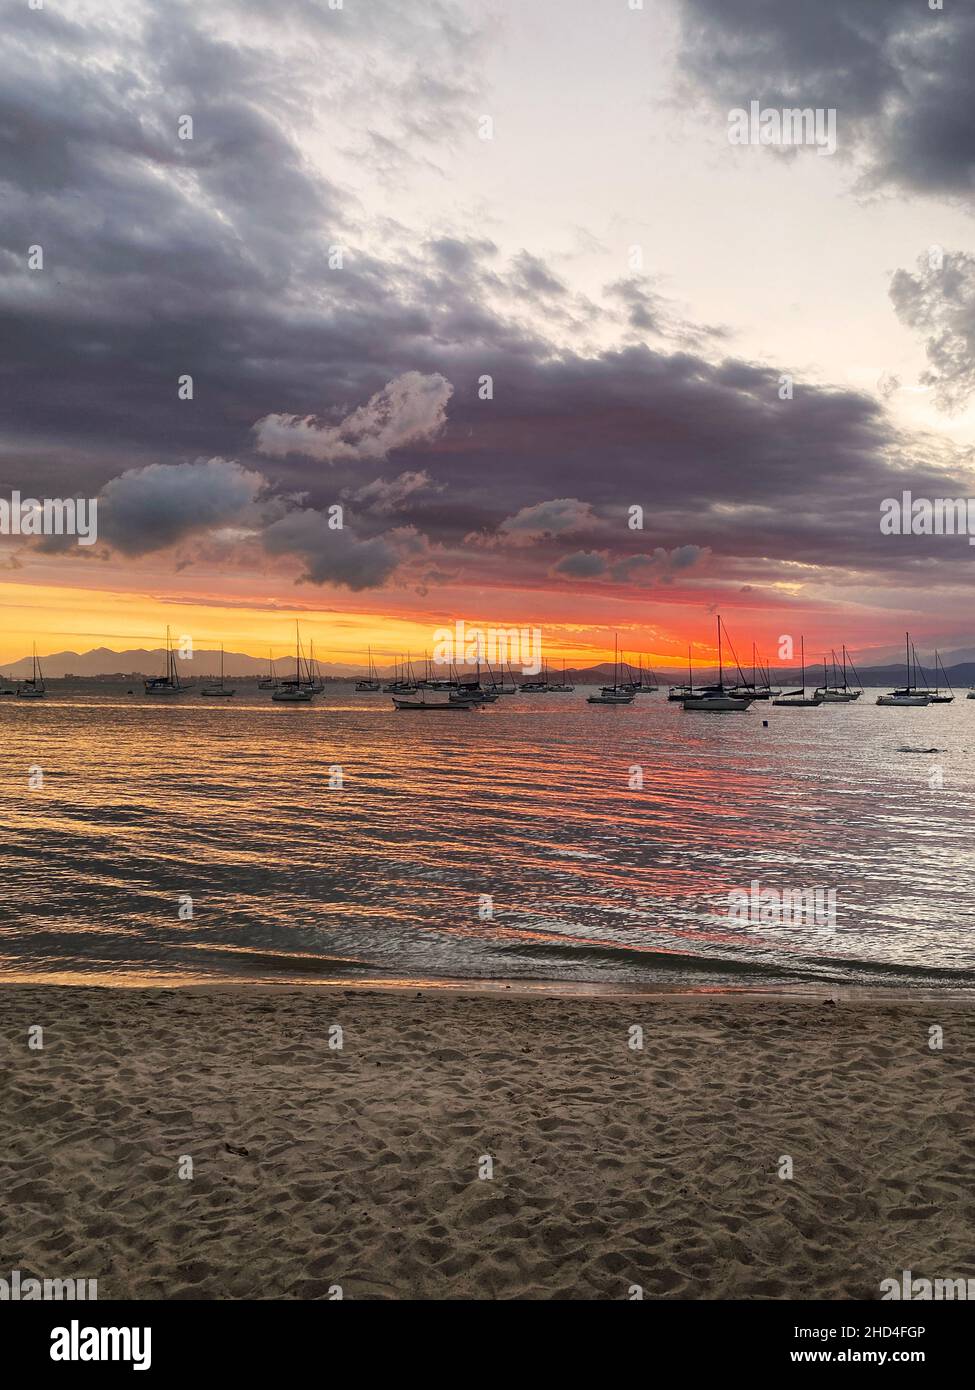 È il momento del romanticismo. Un tramonto drammatico sulle spiagge del Brasile. Un paesaggio mozzafiato e una bellezza incomparabile. Foto Stock